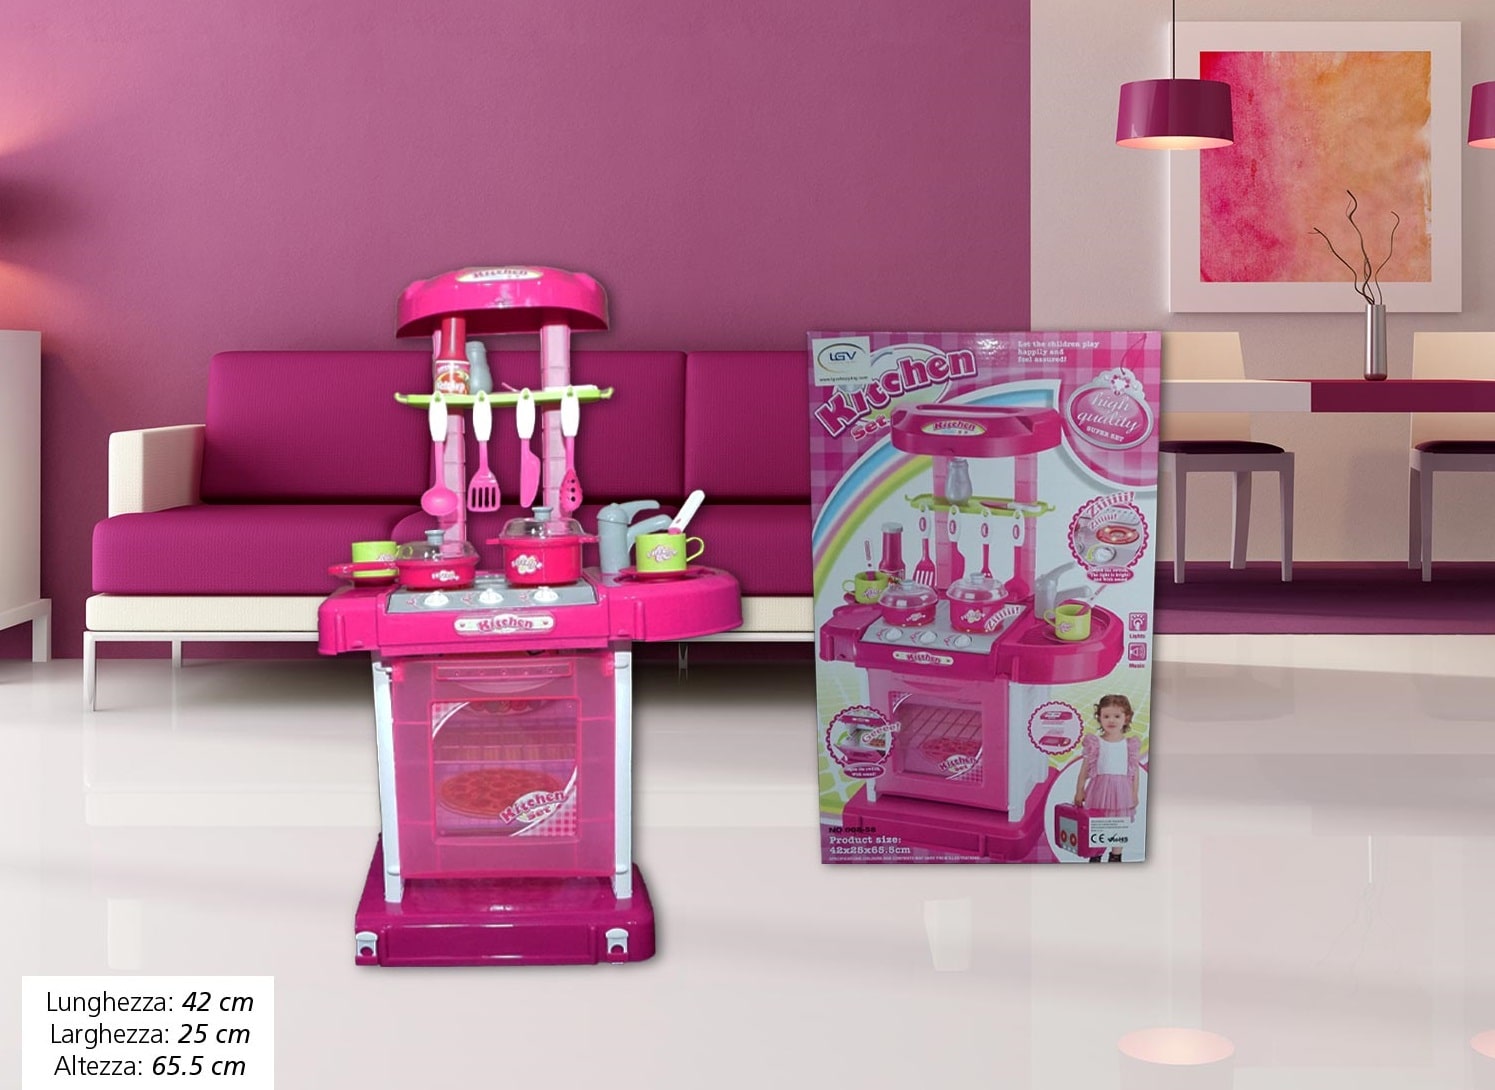 Cucina Giocattolo Per Bambini Kitchen Set Richiudibile in Valigetta 42x25x65,5cm.